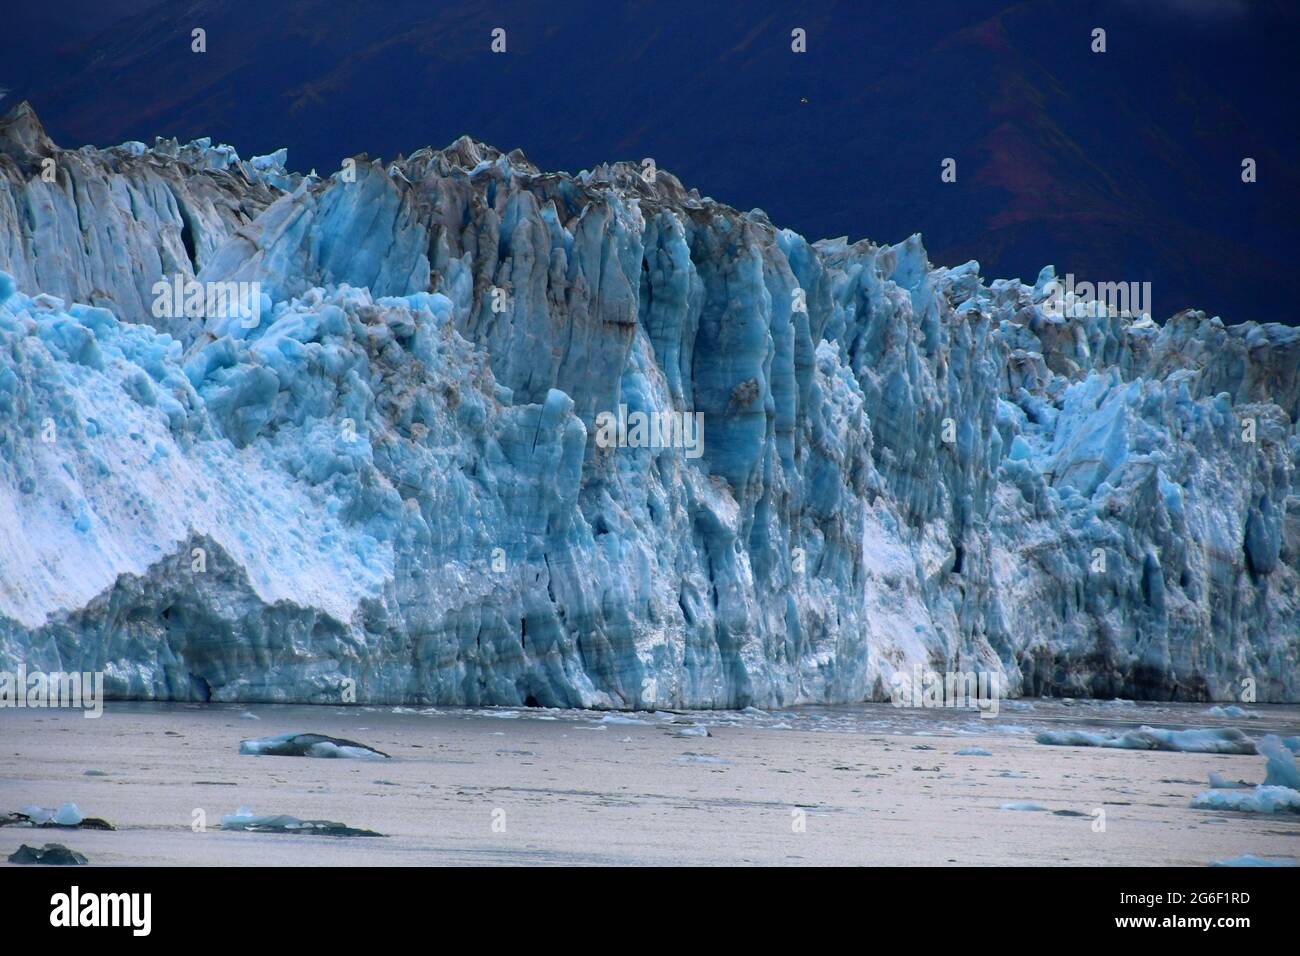 Hubbard Glacier, Alaska. The Hubbard Glacier is a glacier in the State of Alaska and the Yukon Territory of Canada. Stock Photo